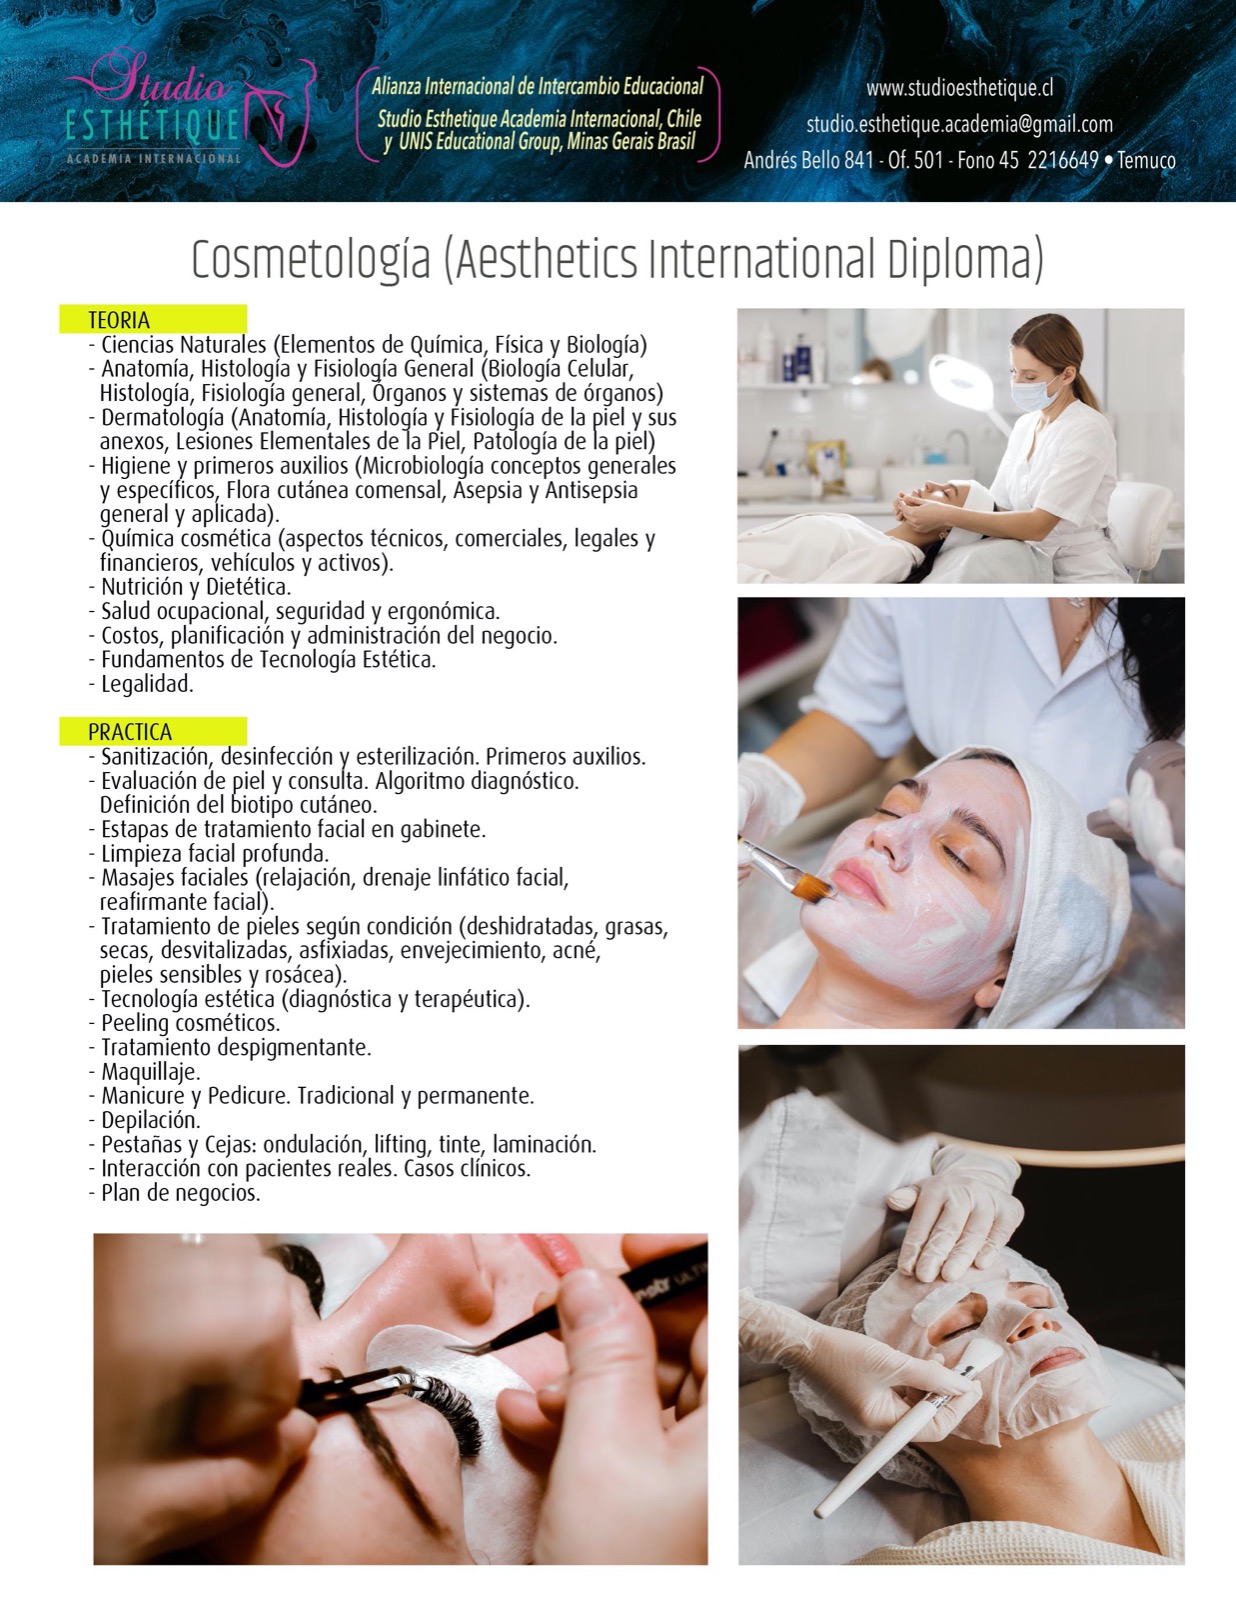 cosmetología, faciales, limpieza facial, maquillaje